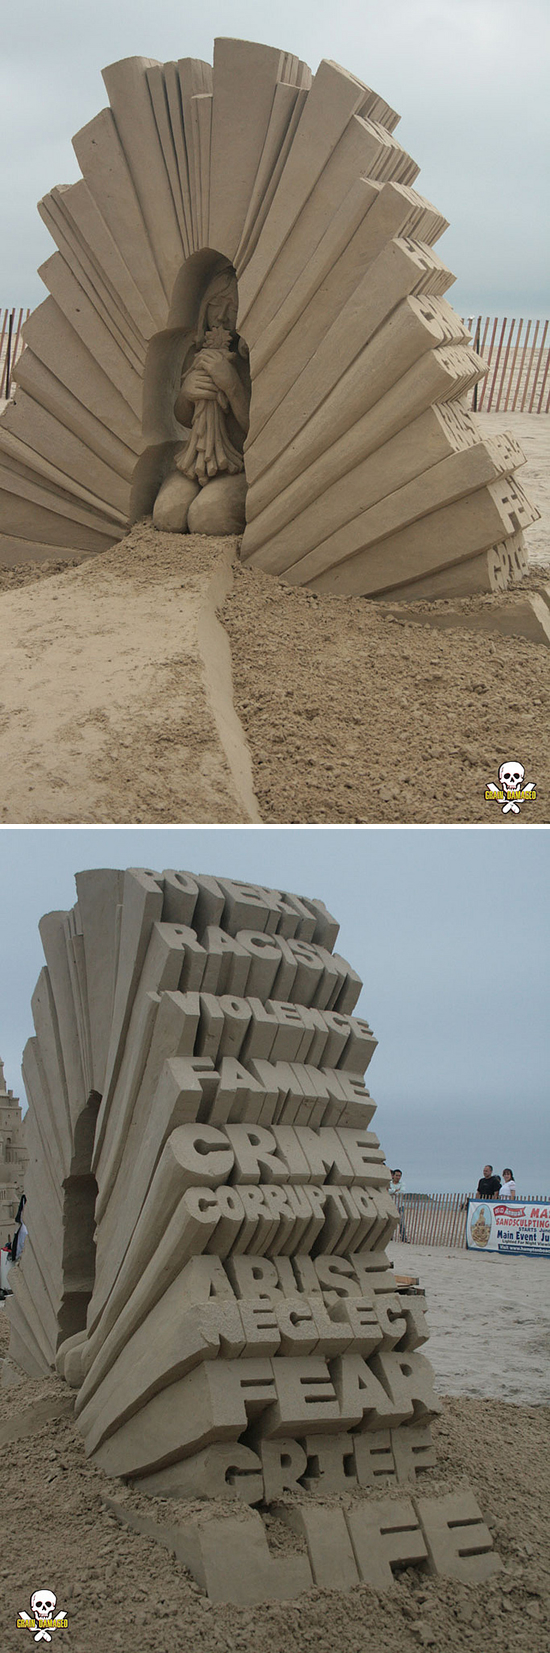 信じられないほどの精密さ、幻想的で美しい砂の彫刻